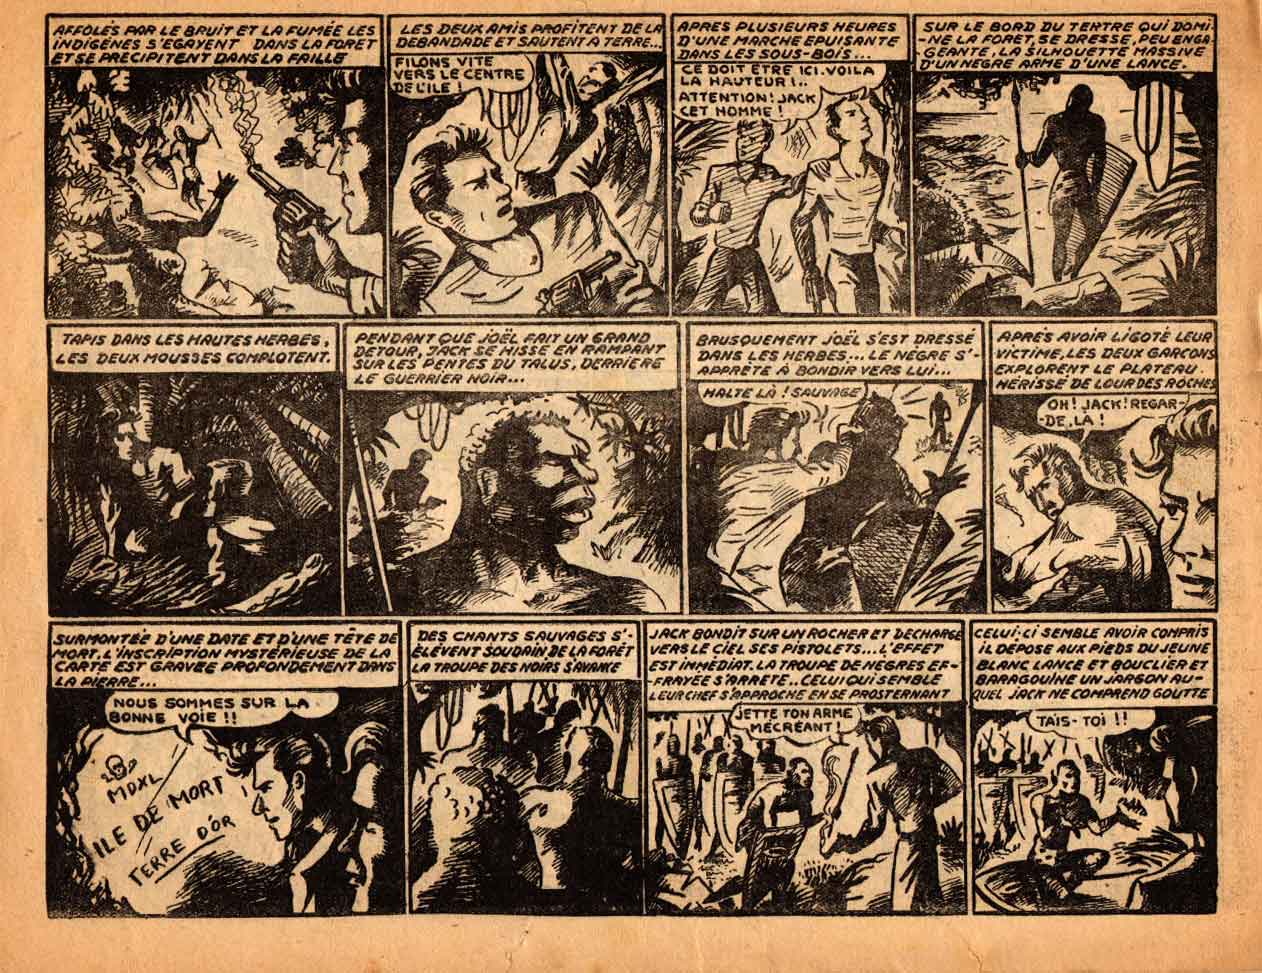 « Le Mystère de l’île noire » Sélection Pic et Nic (12/1947).